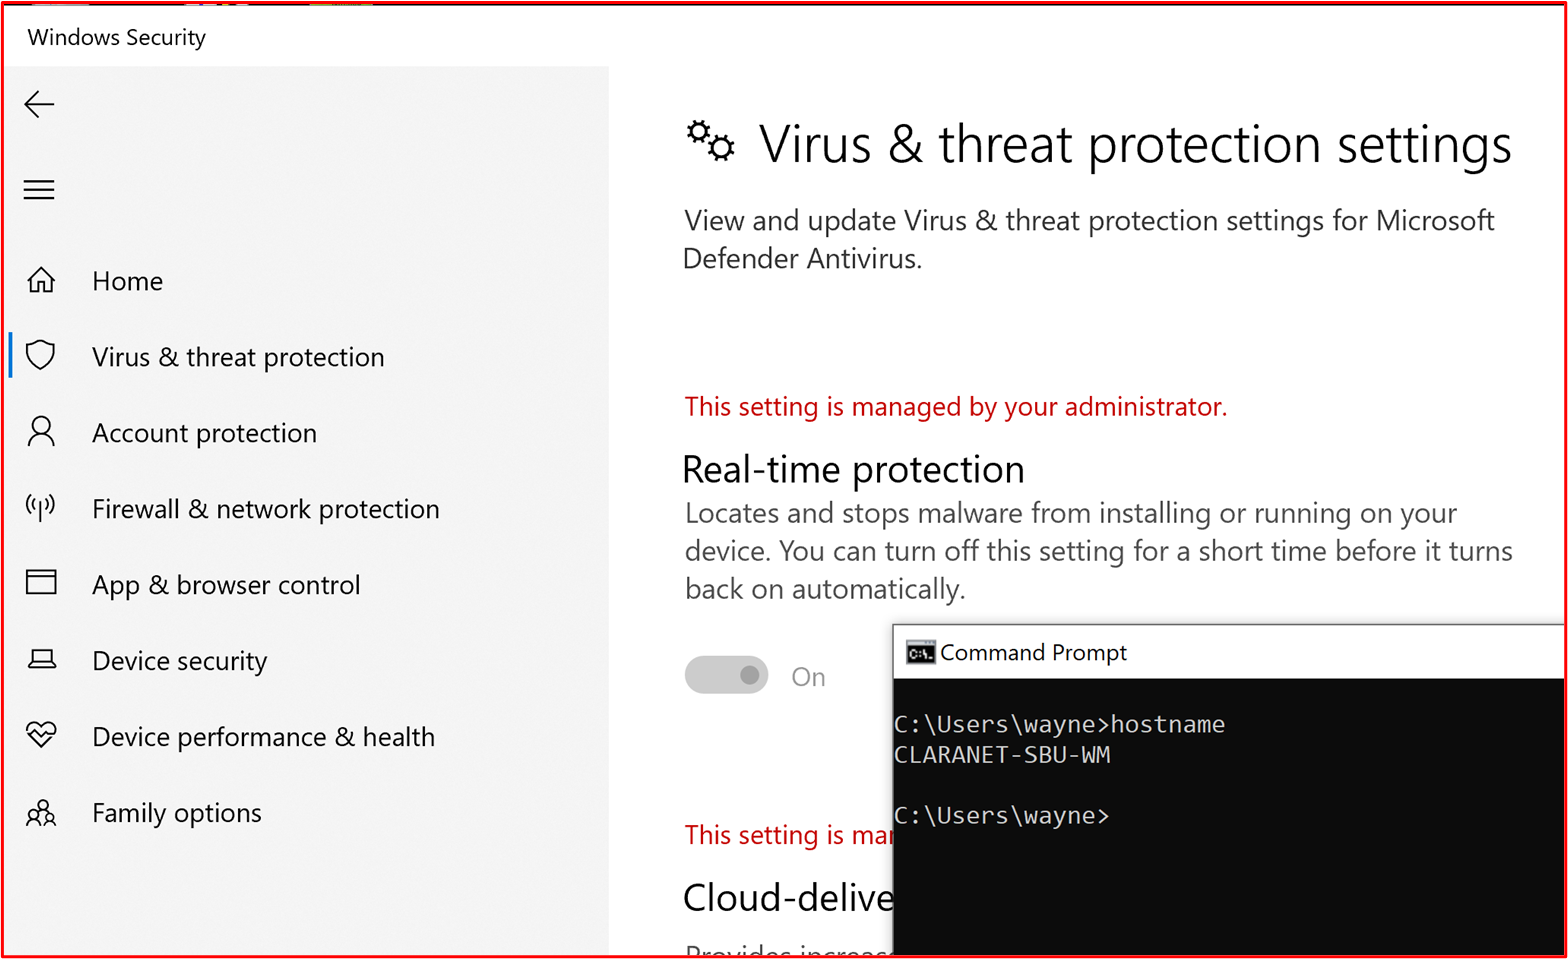 螢幕快照顯示主機 「CLARANET-SBU-WM」 已針對 Microsoft Defender 防病毒軟體設定即時保護。